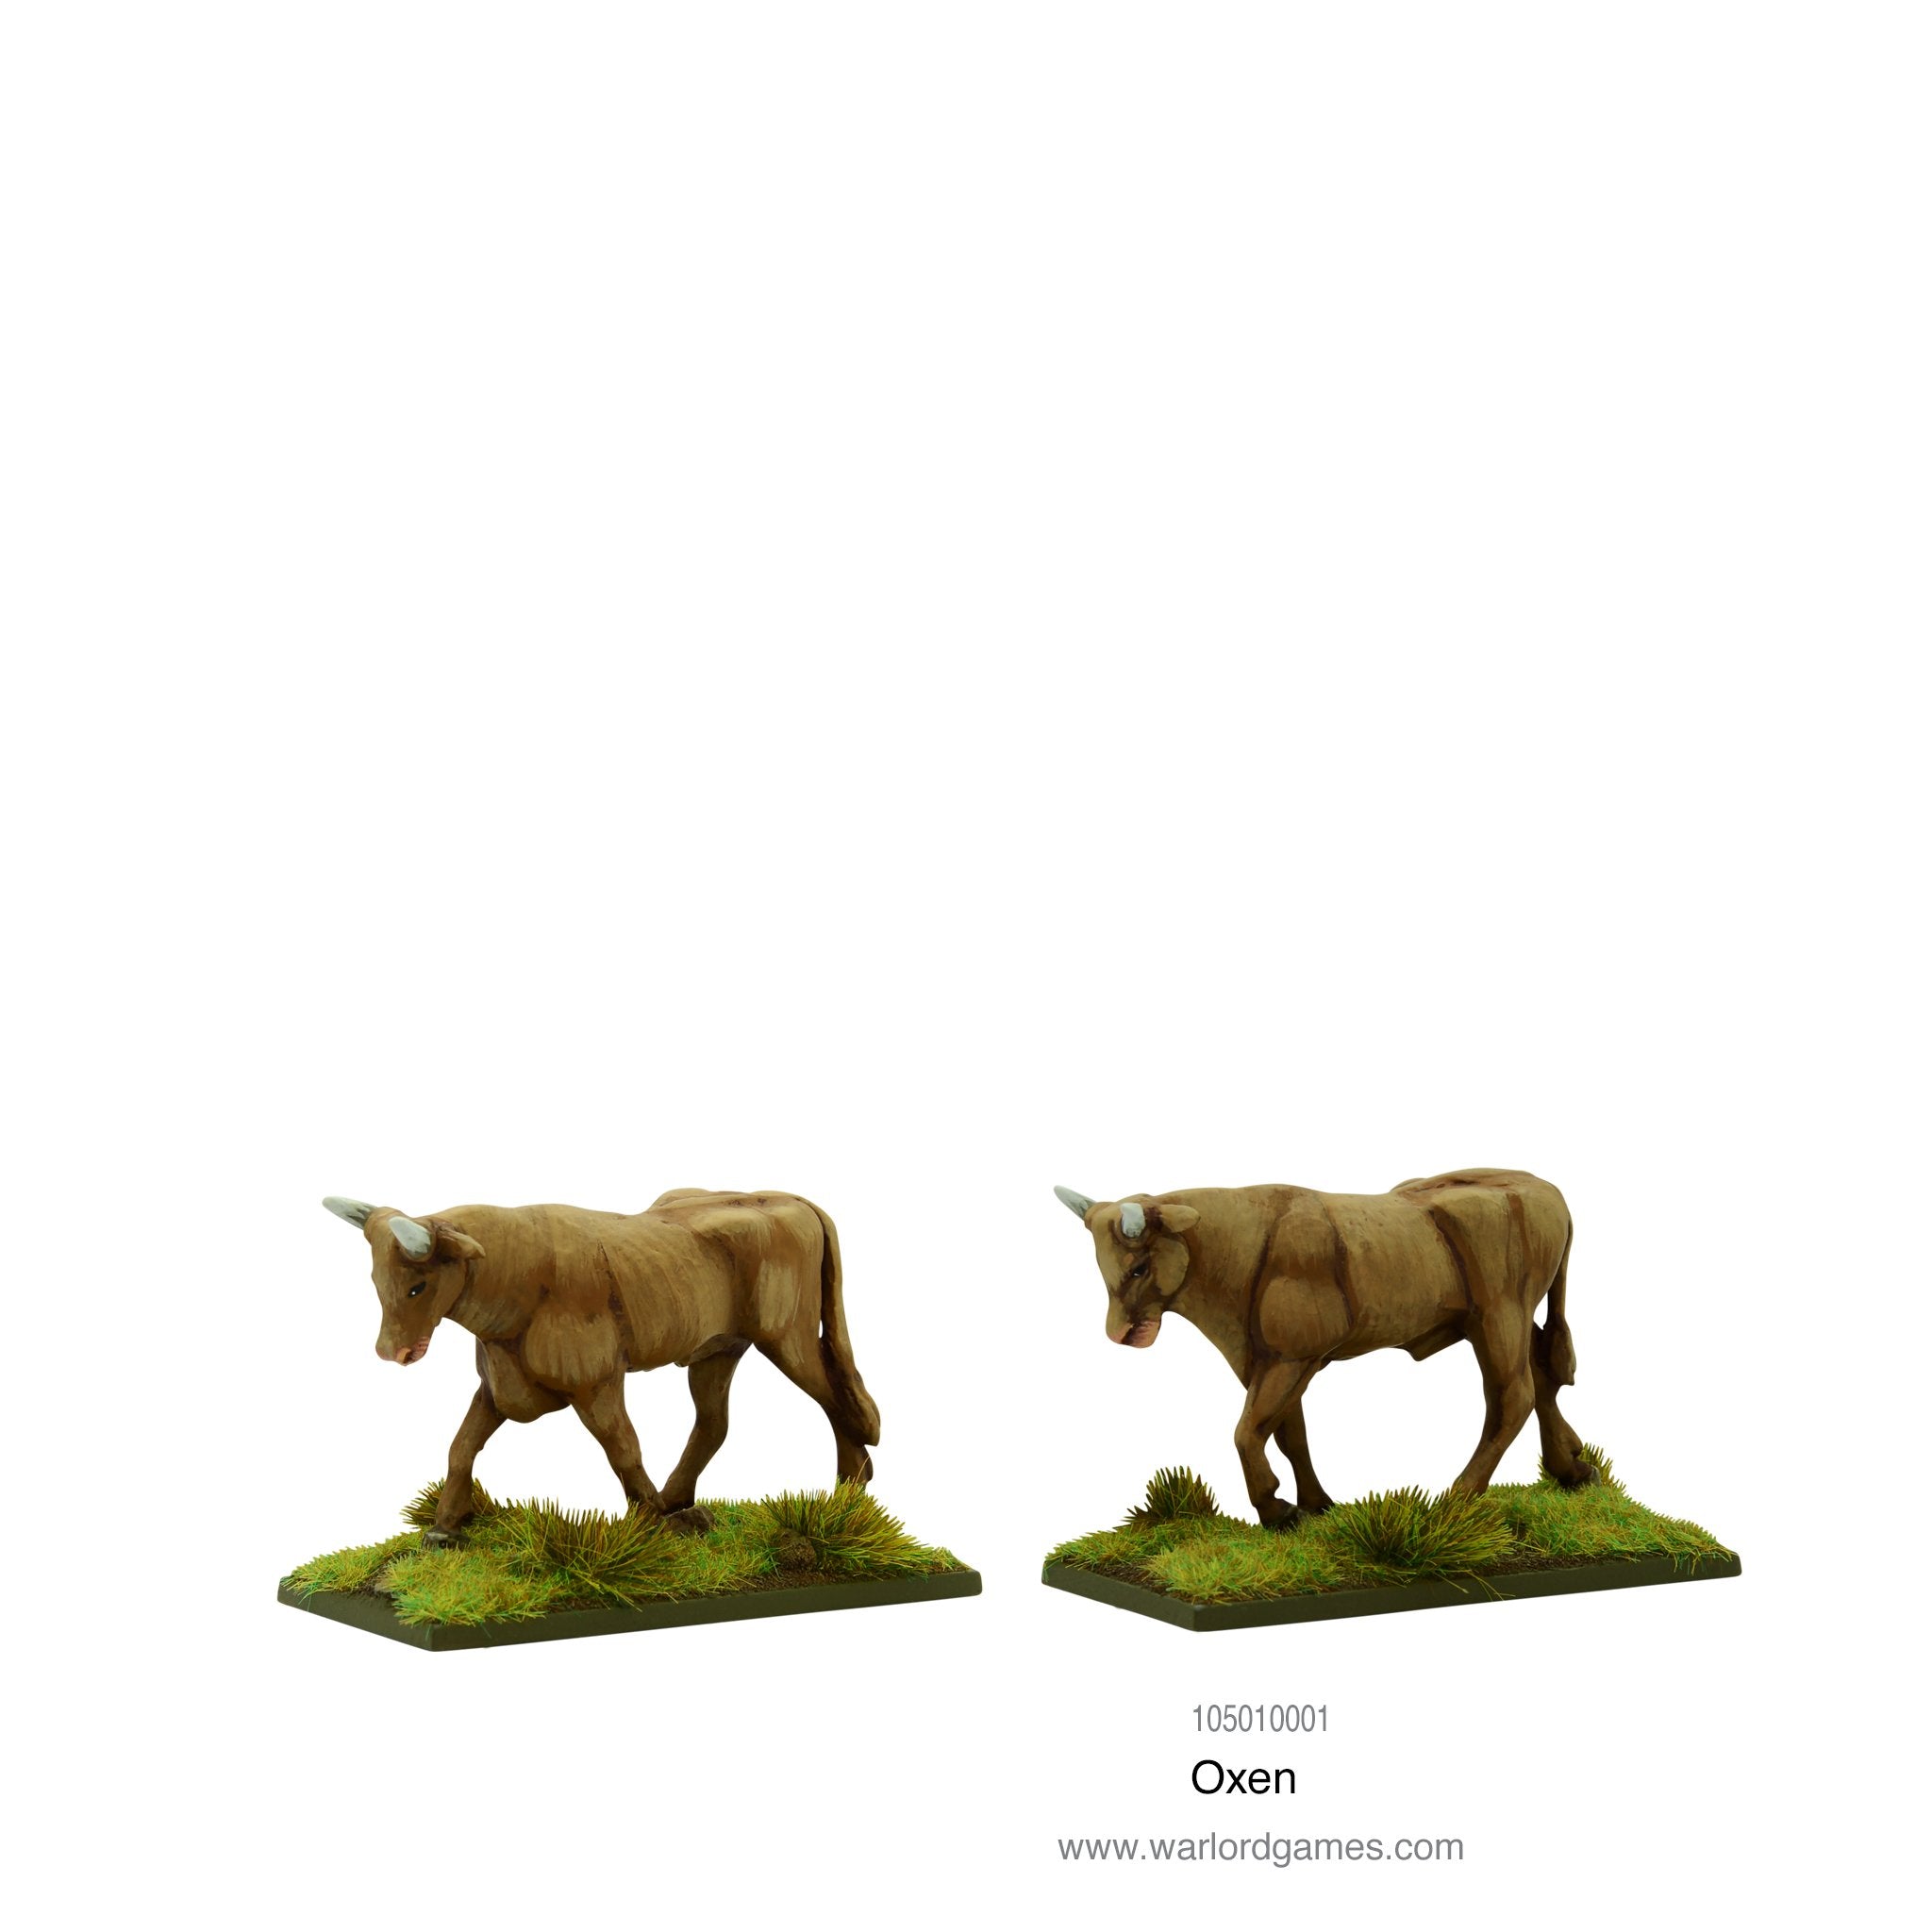 Oxen